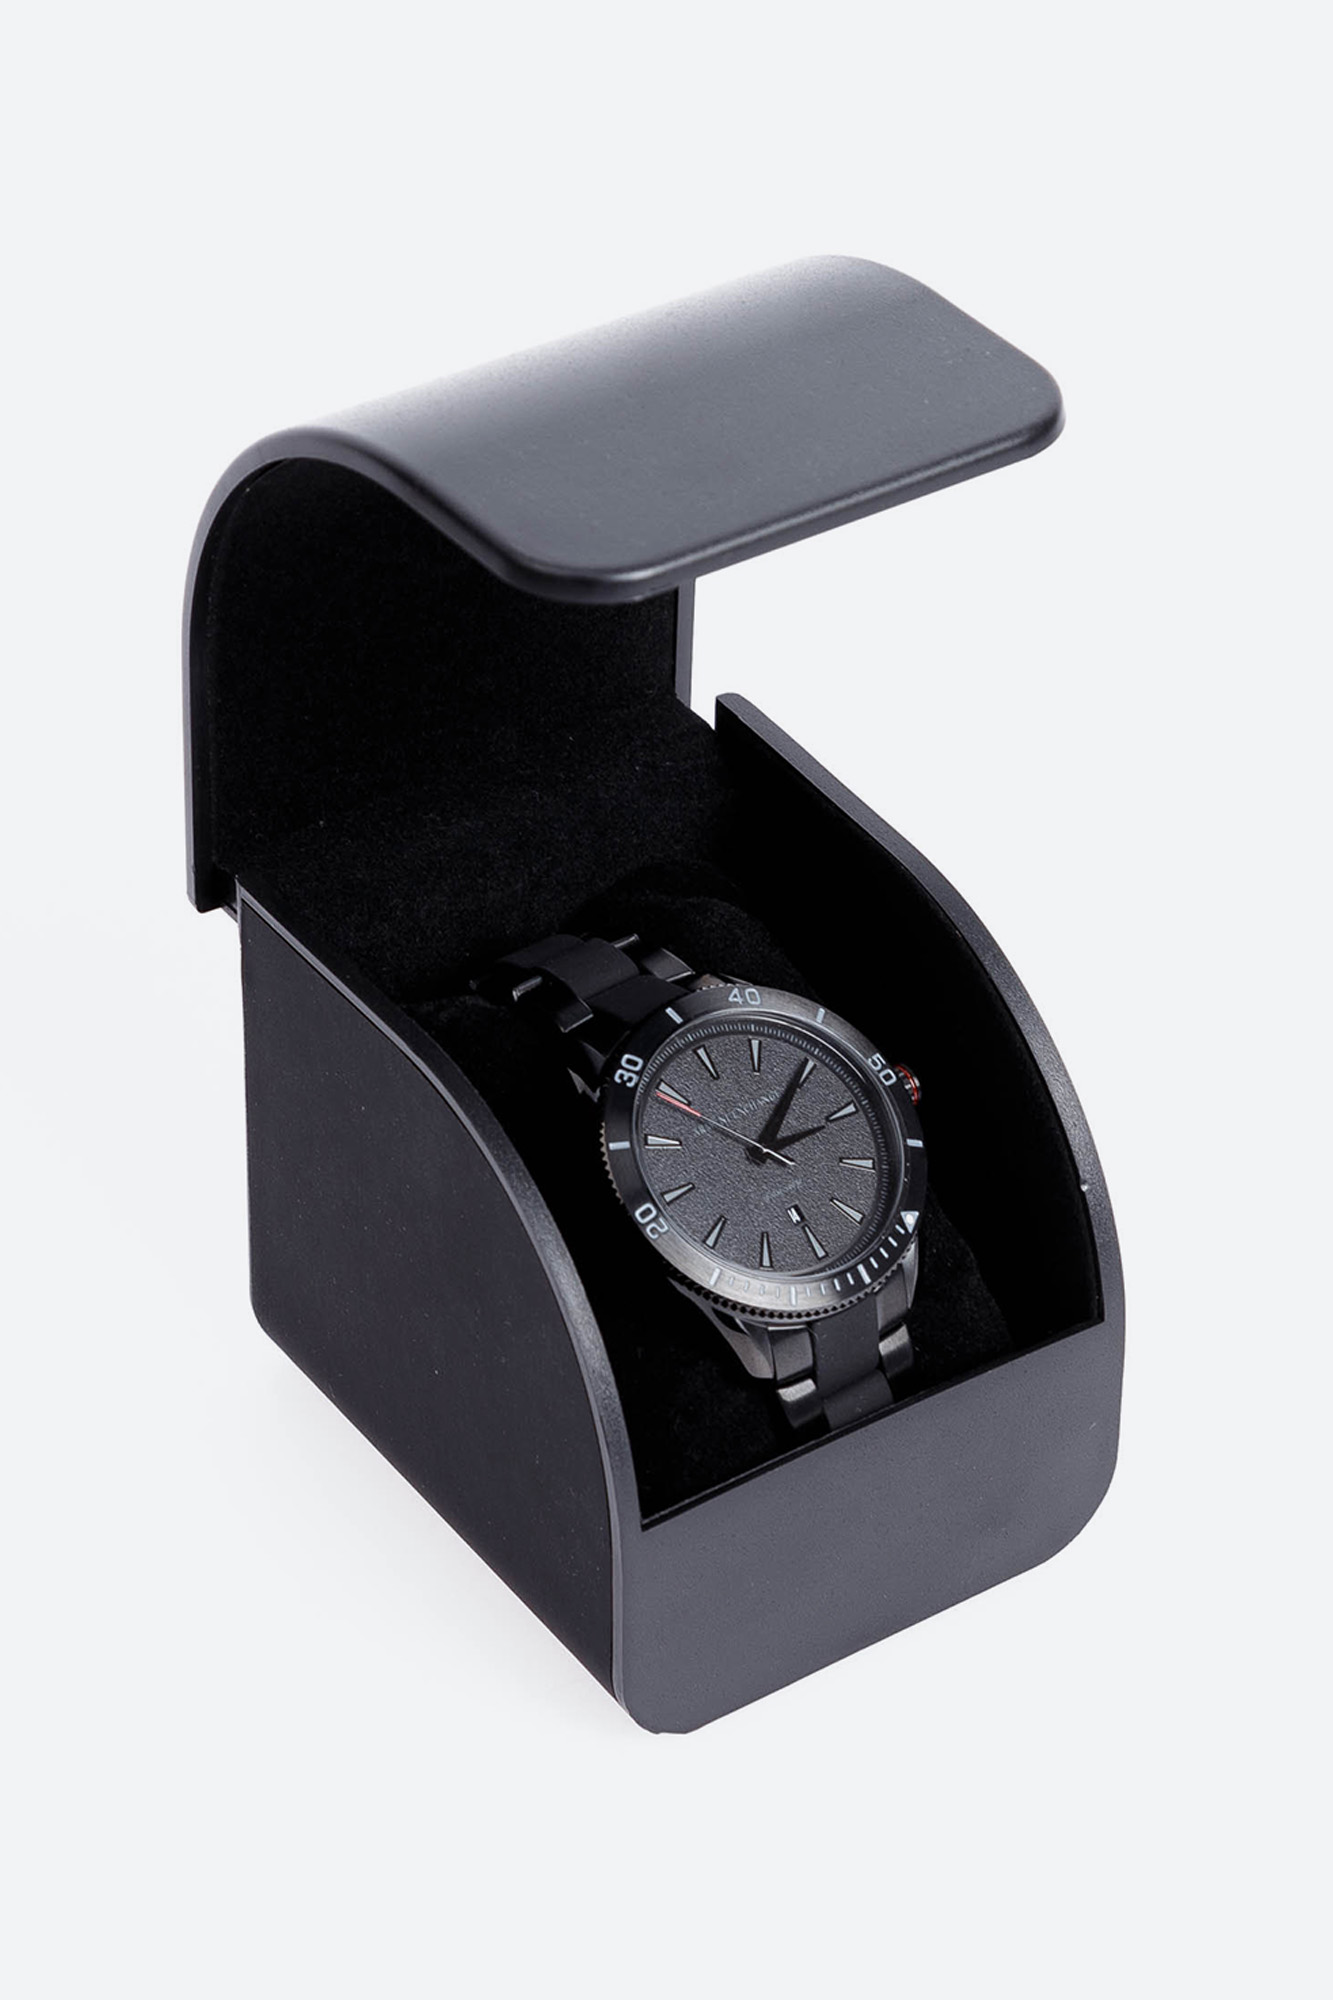 Наручные часы Armani Exchange AX1826 Часы наручные Armani Exchange Черный